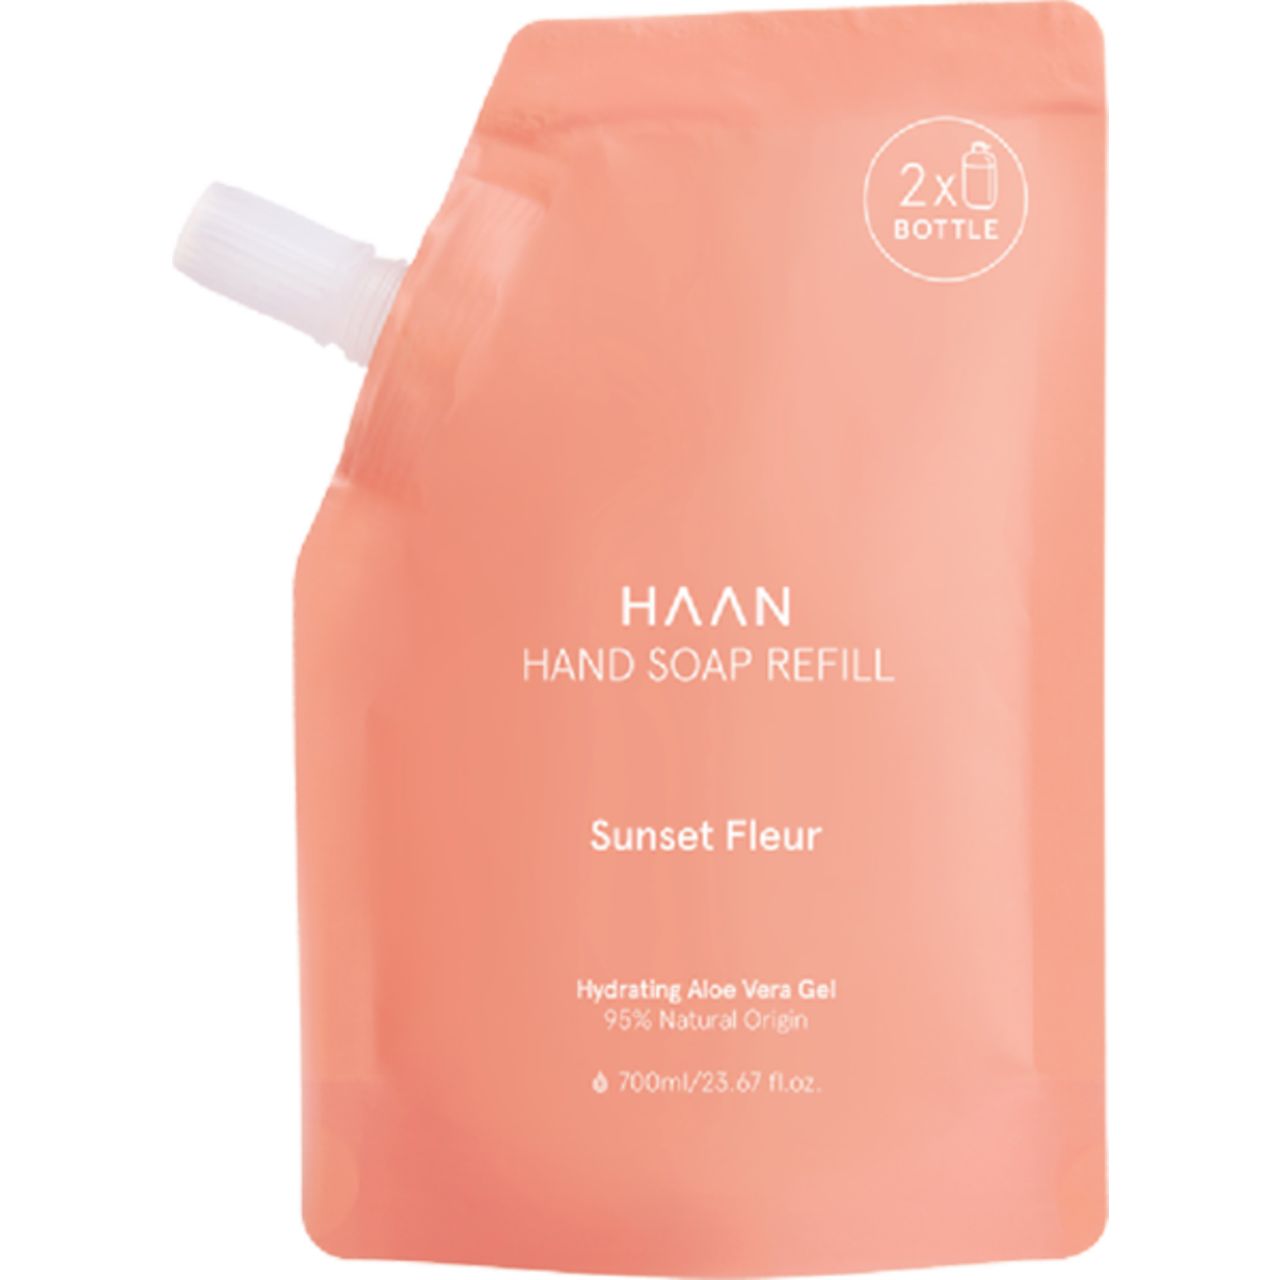 HAAN, Sunset Fleur Hand Soap Refill